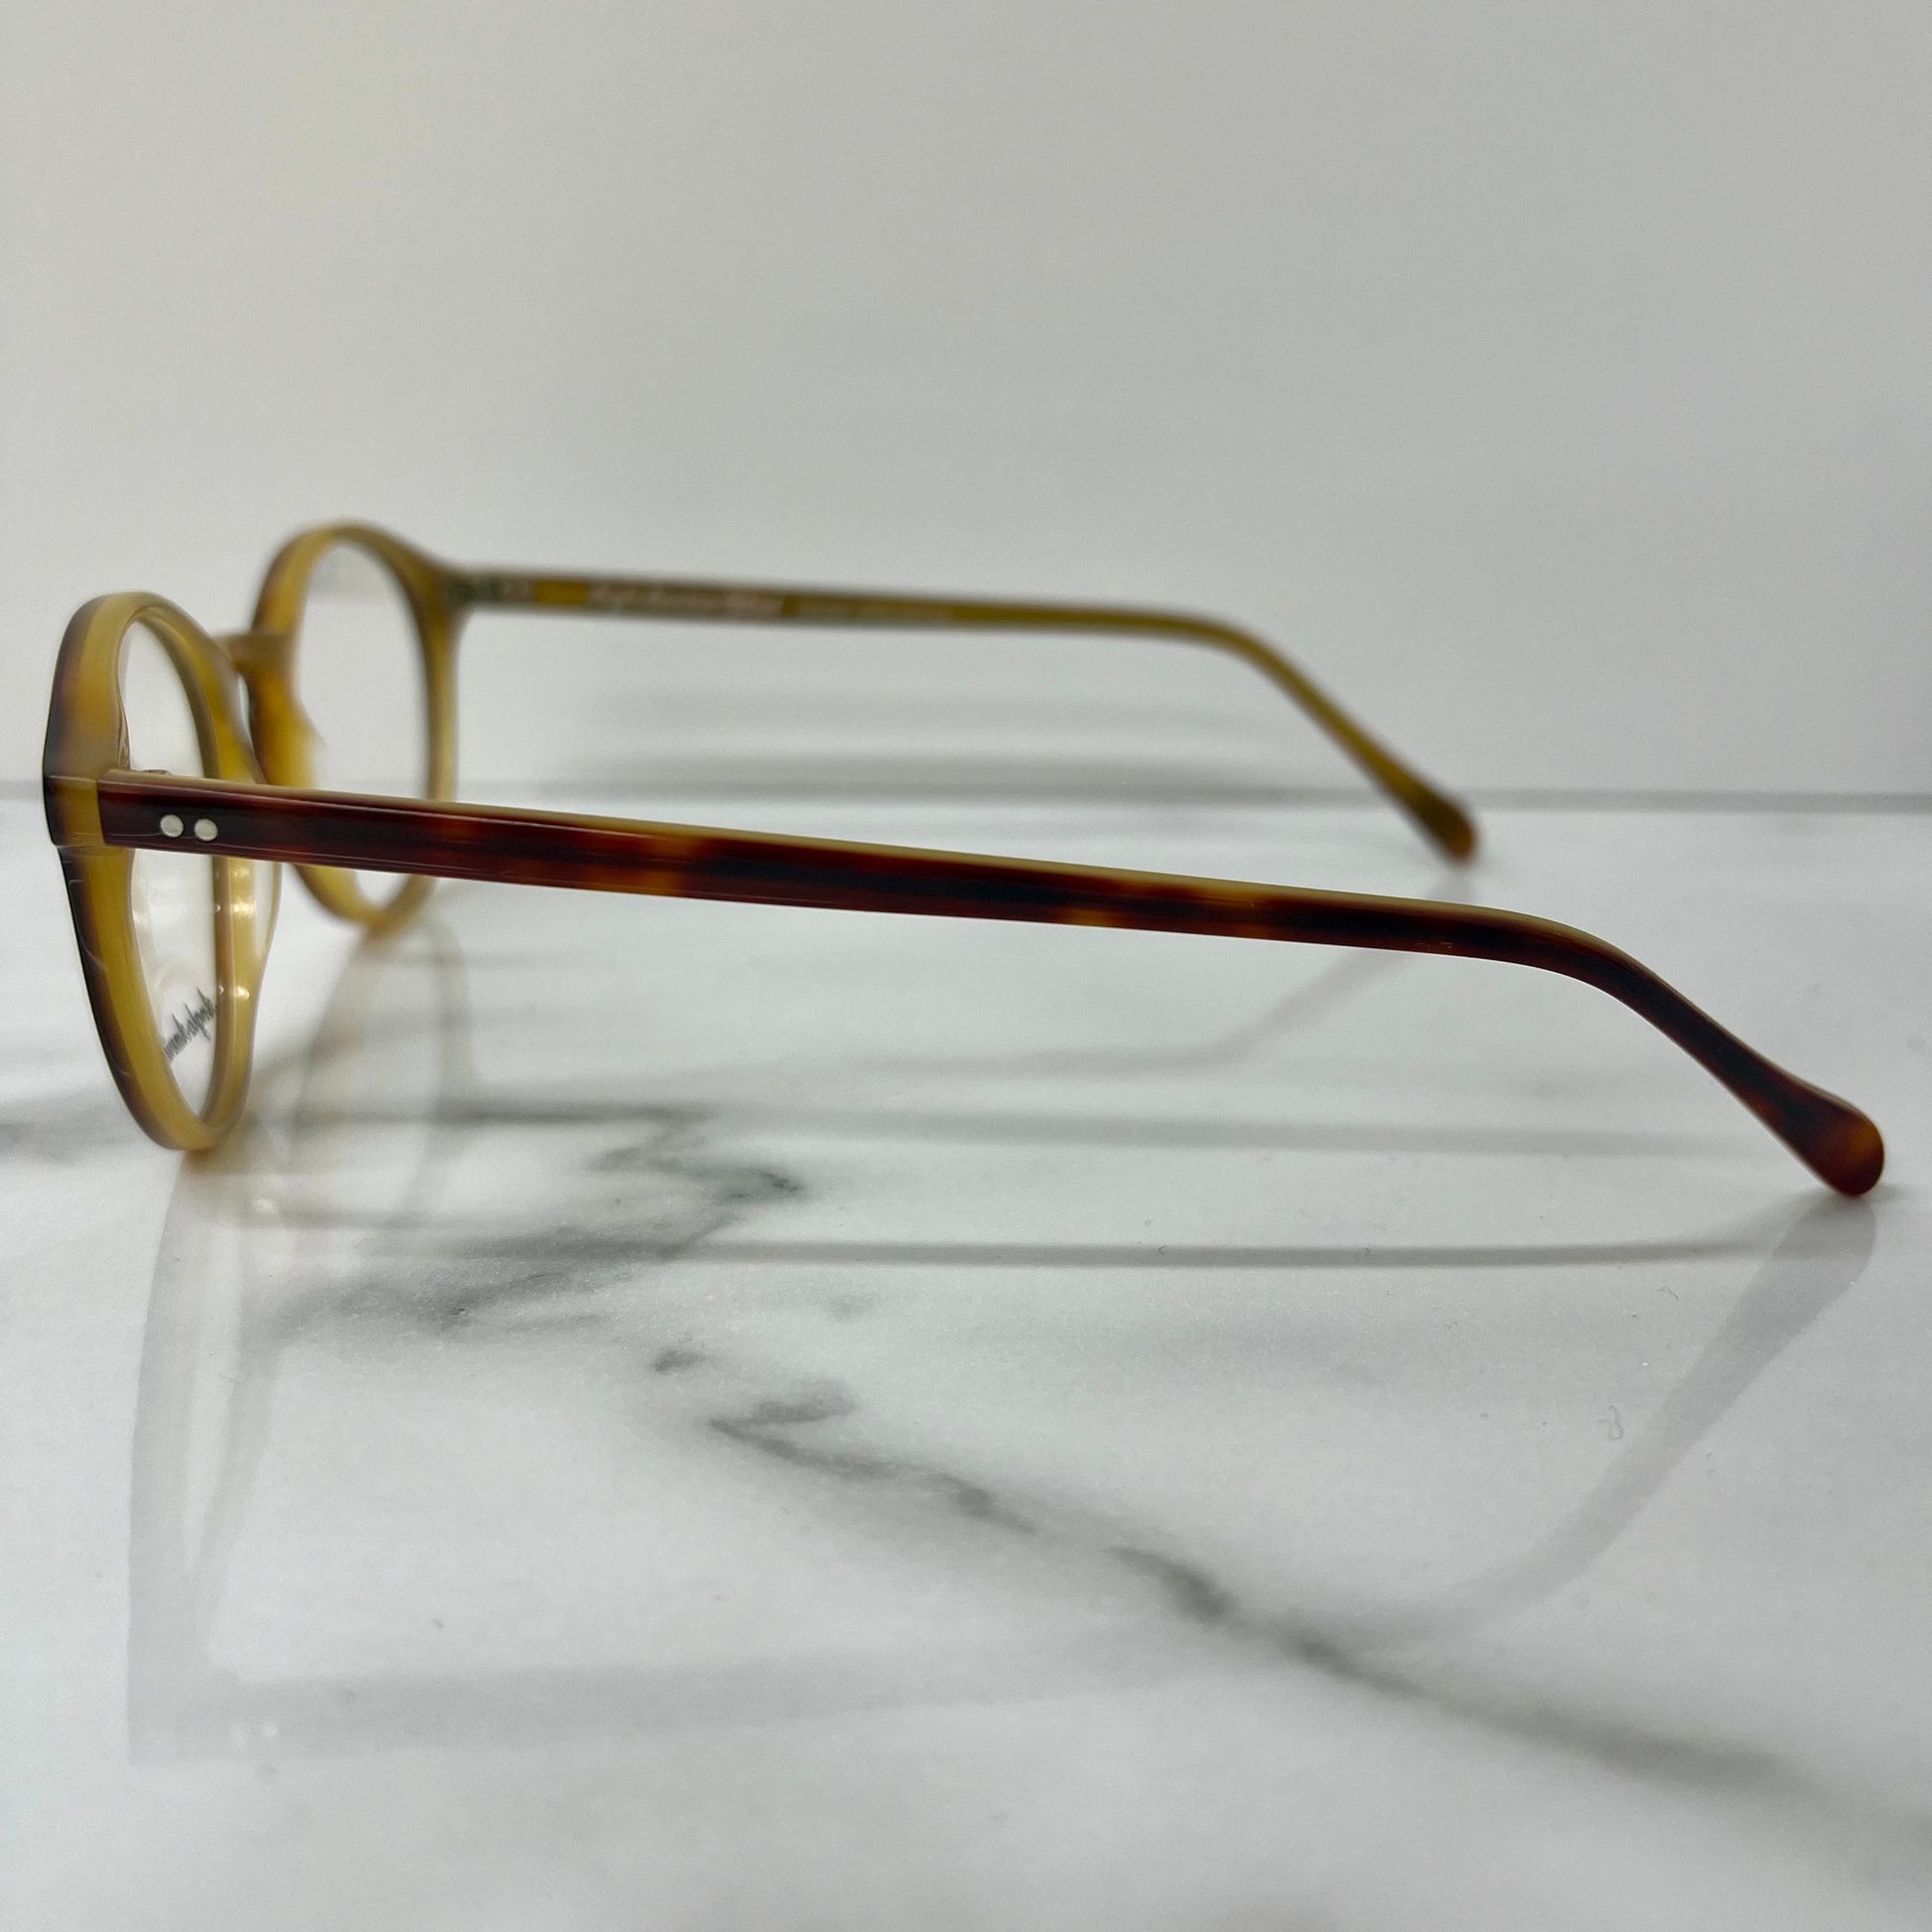 Anglo American 406 Glasses Frames Brown Gold 50mm England Designer Eyeglasses